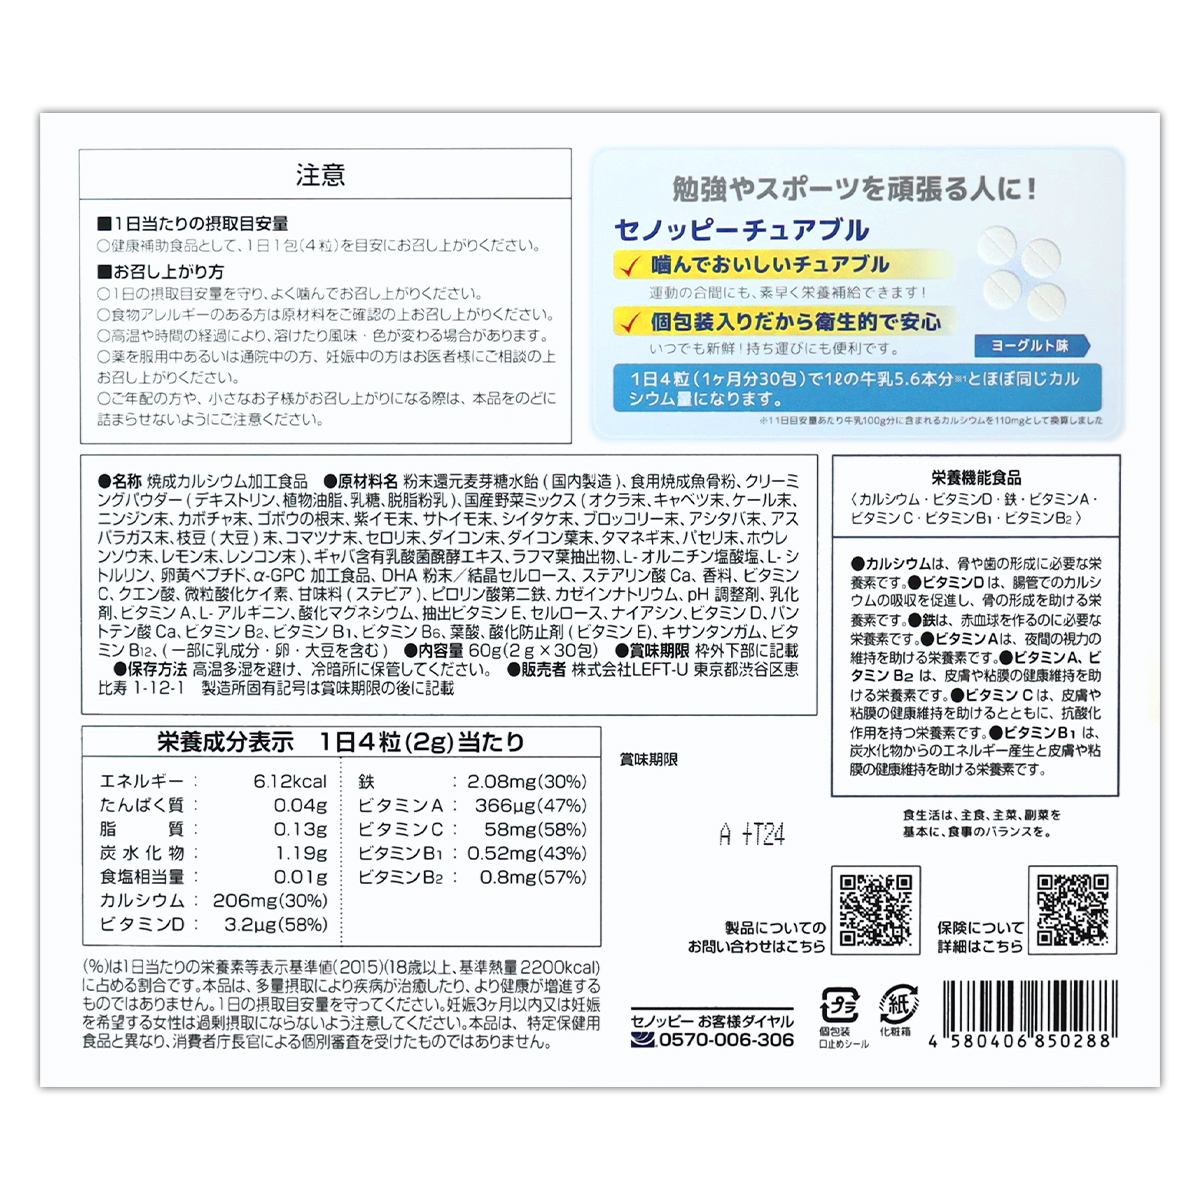 セノッピー チュアブル ヨーグルト味 60g ( 2g × 30包 ) LEFT-U 子ども 成長 メール便送料無料SPL / セノッピーチ